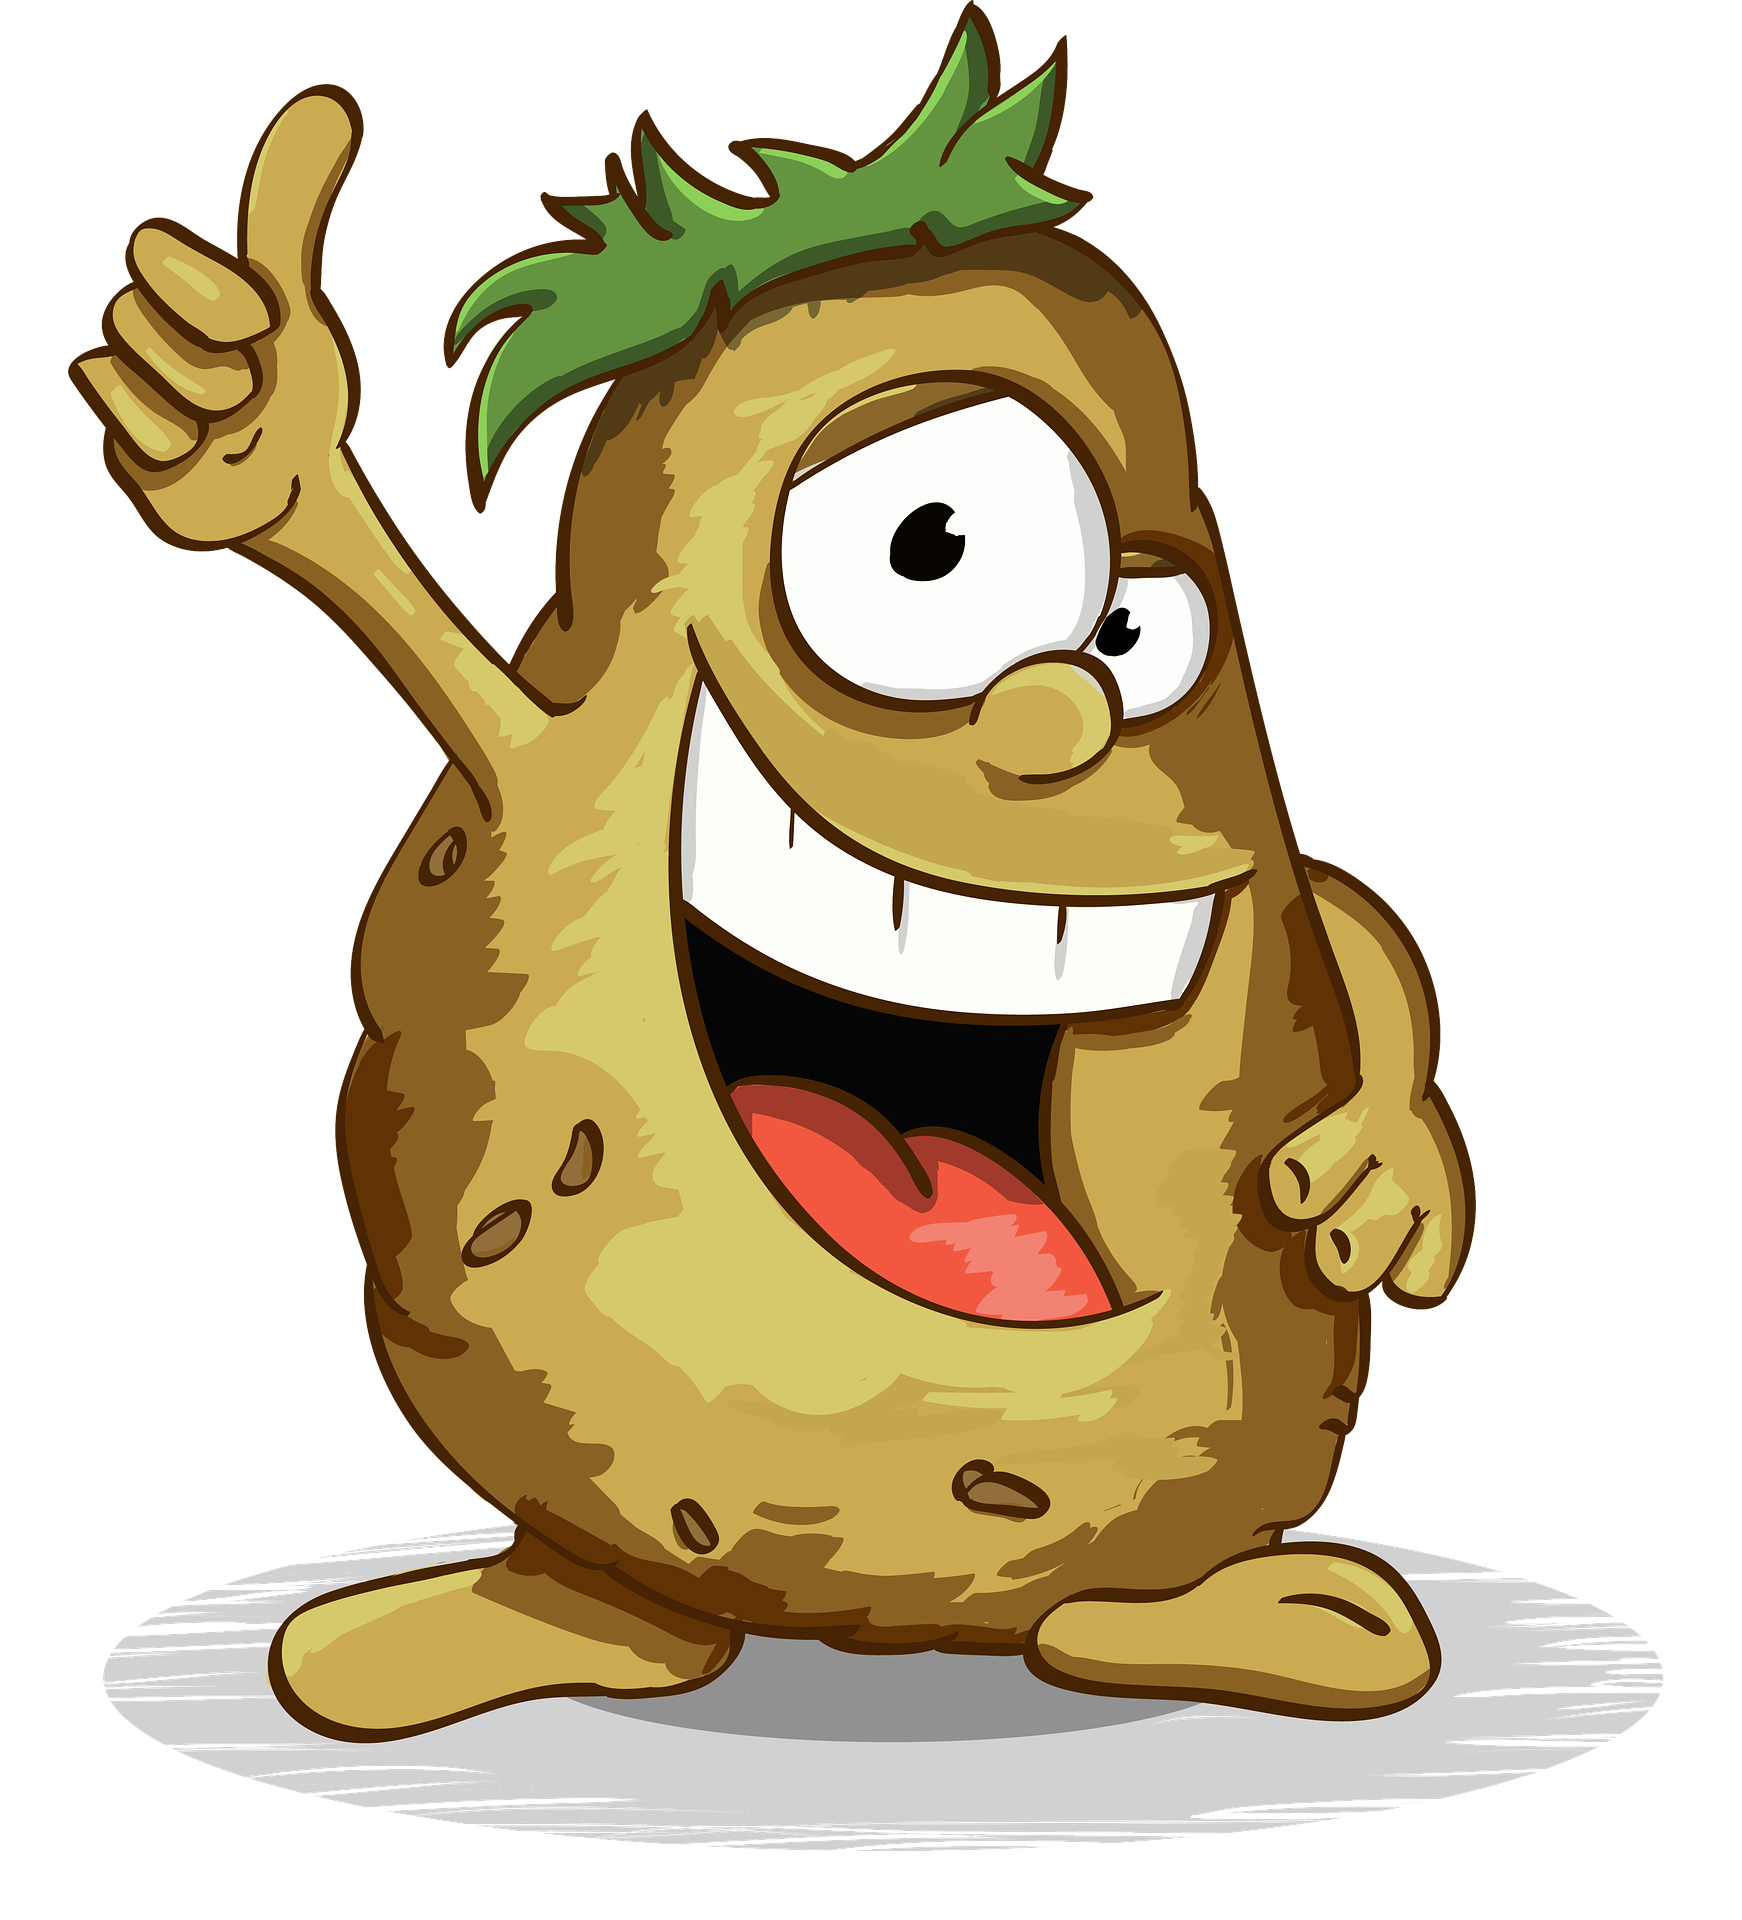 Grafika ilustrująca uśmiechniętego ziemniaka